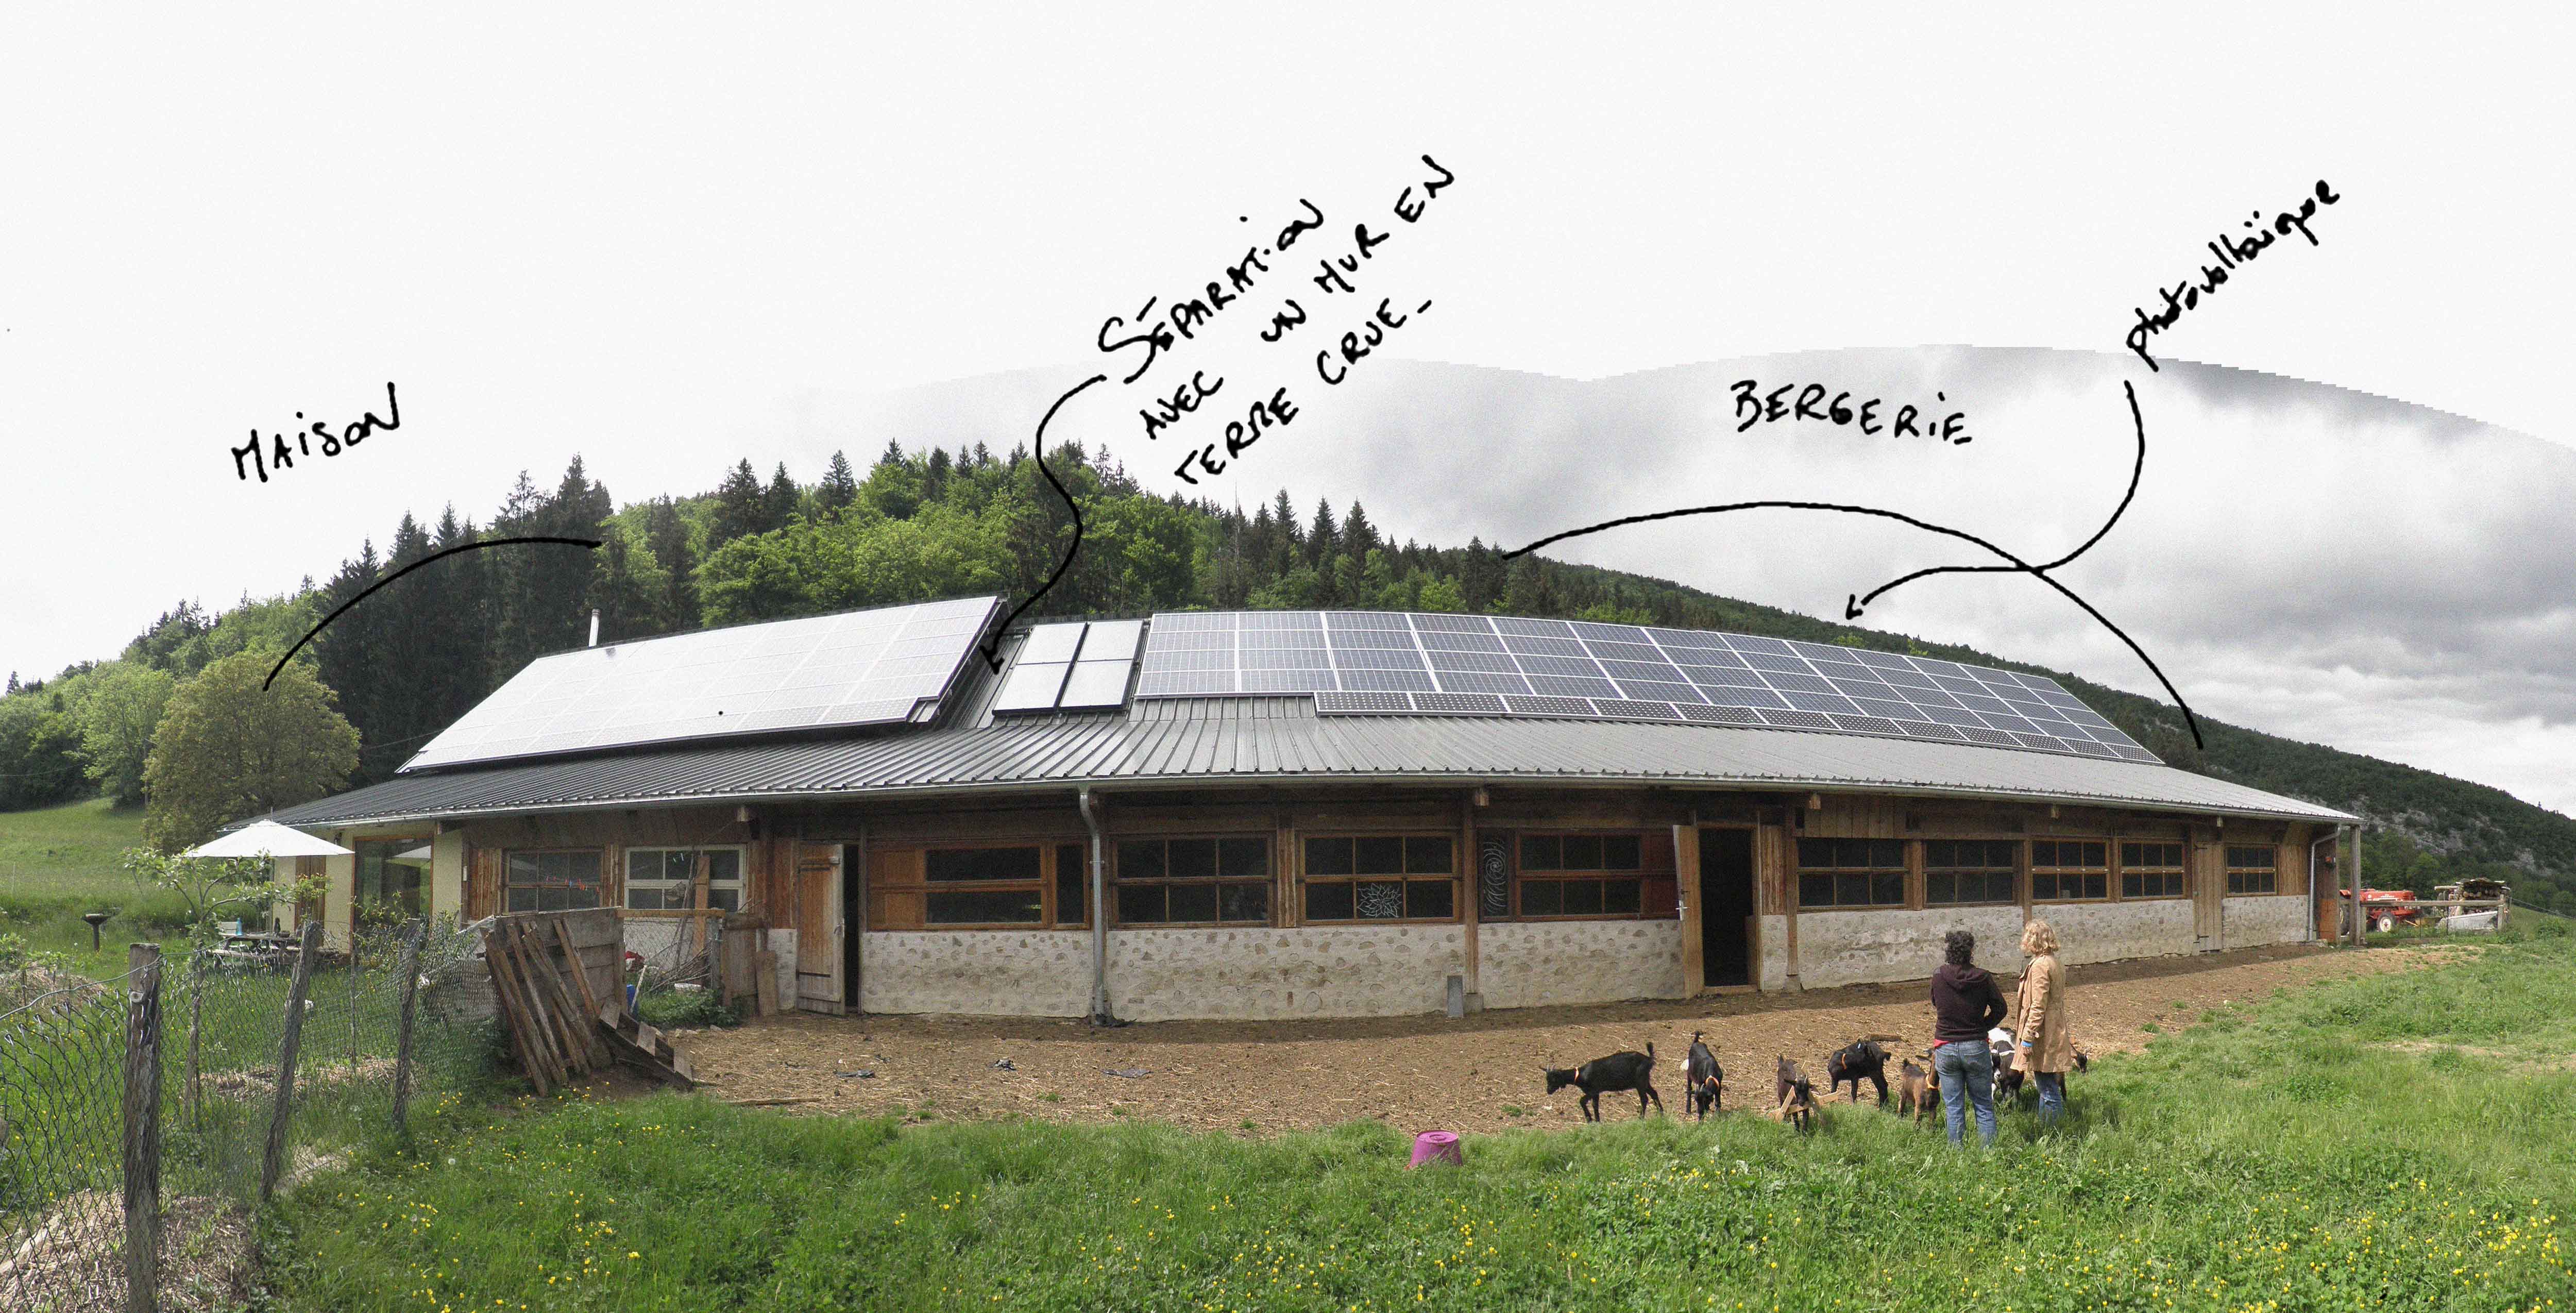 Façade est de la bergerie : on peut voir la toiture louée pour une installation photovoltaïque.